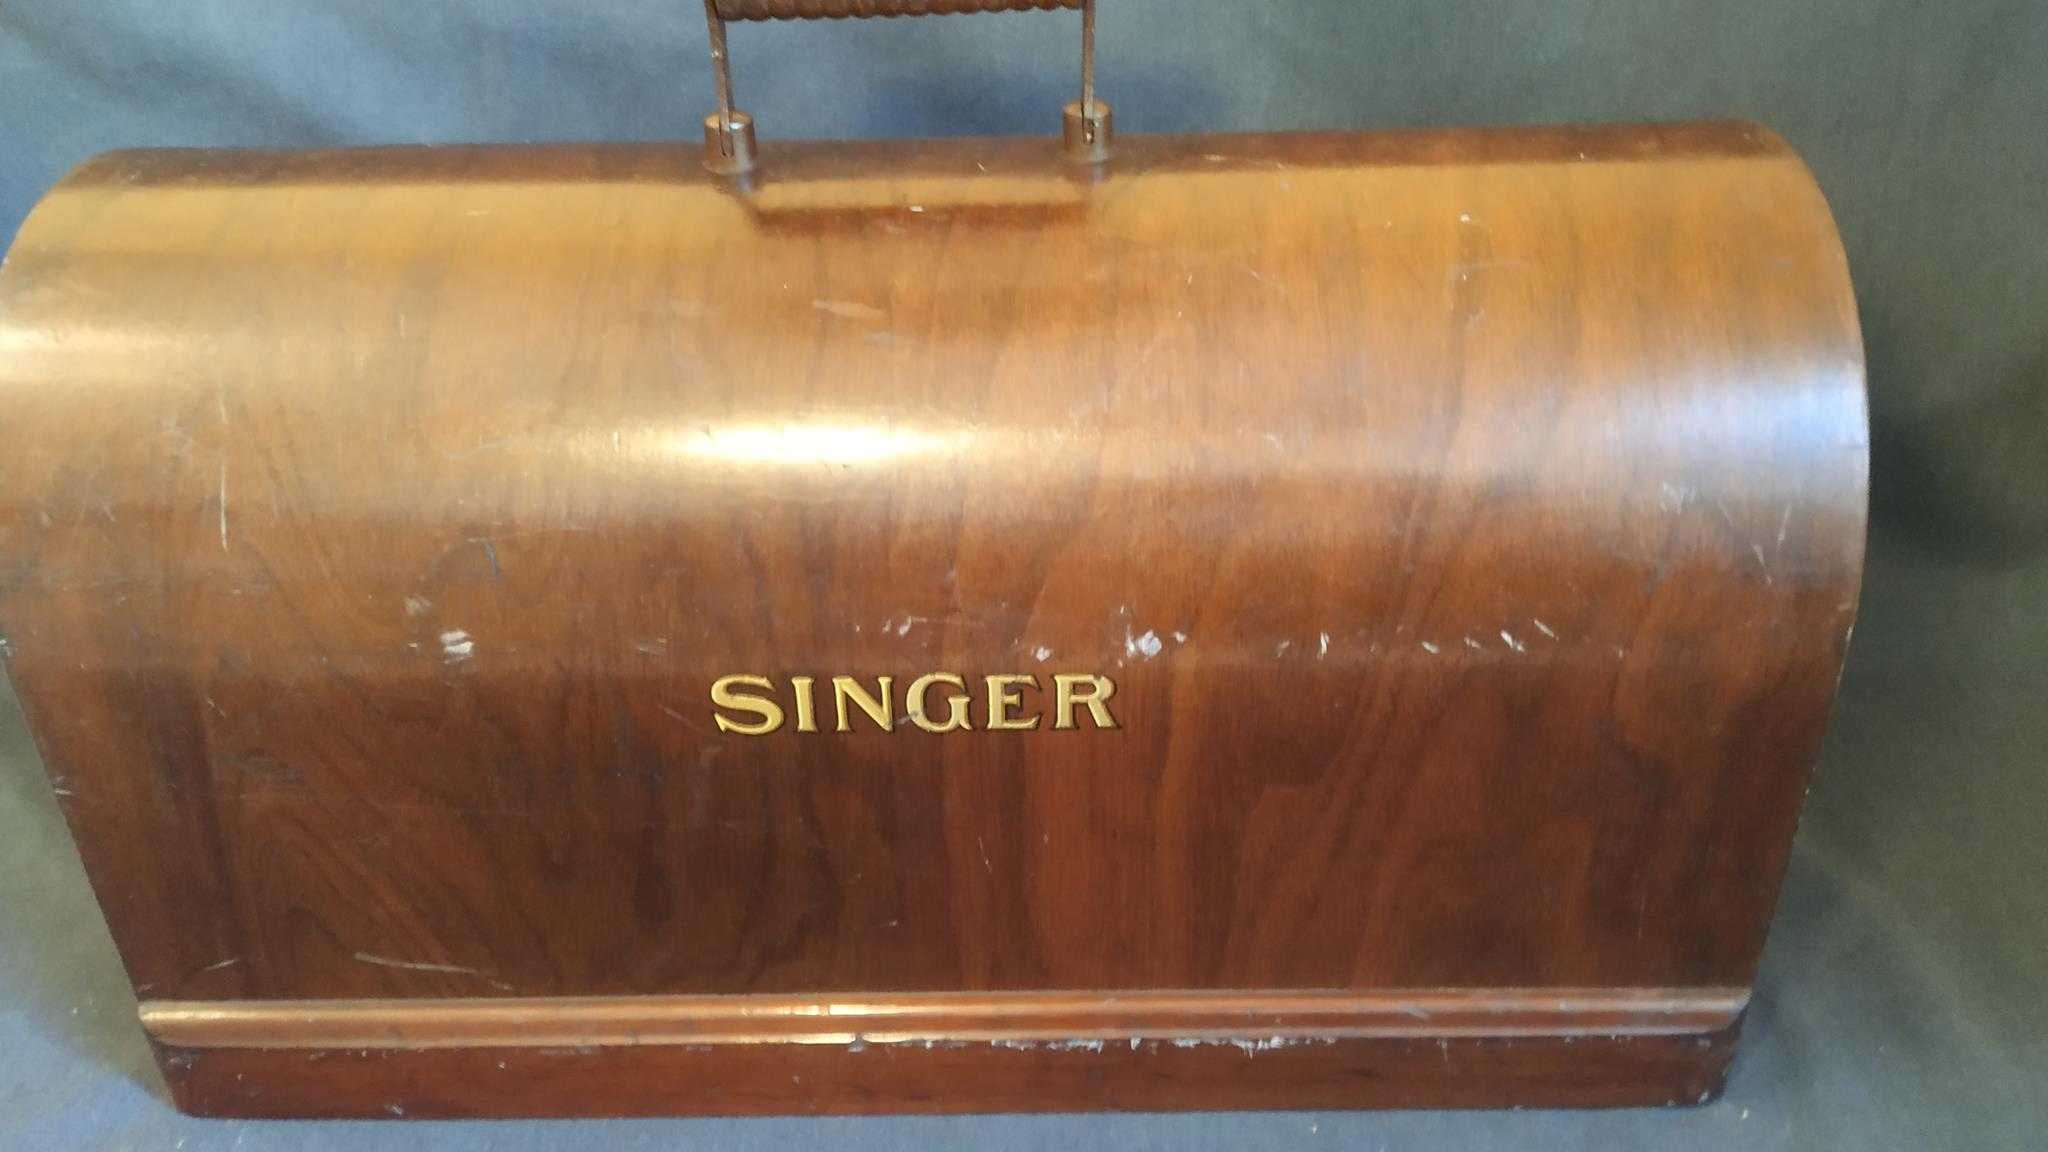 Maszyna do szycia Singer z 1933 roku